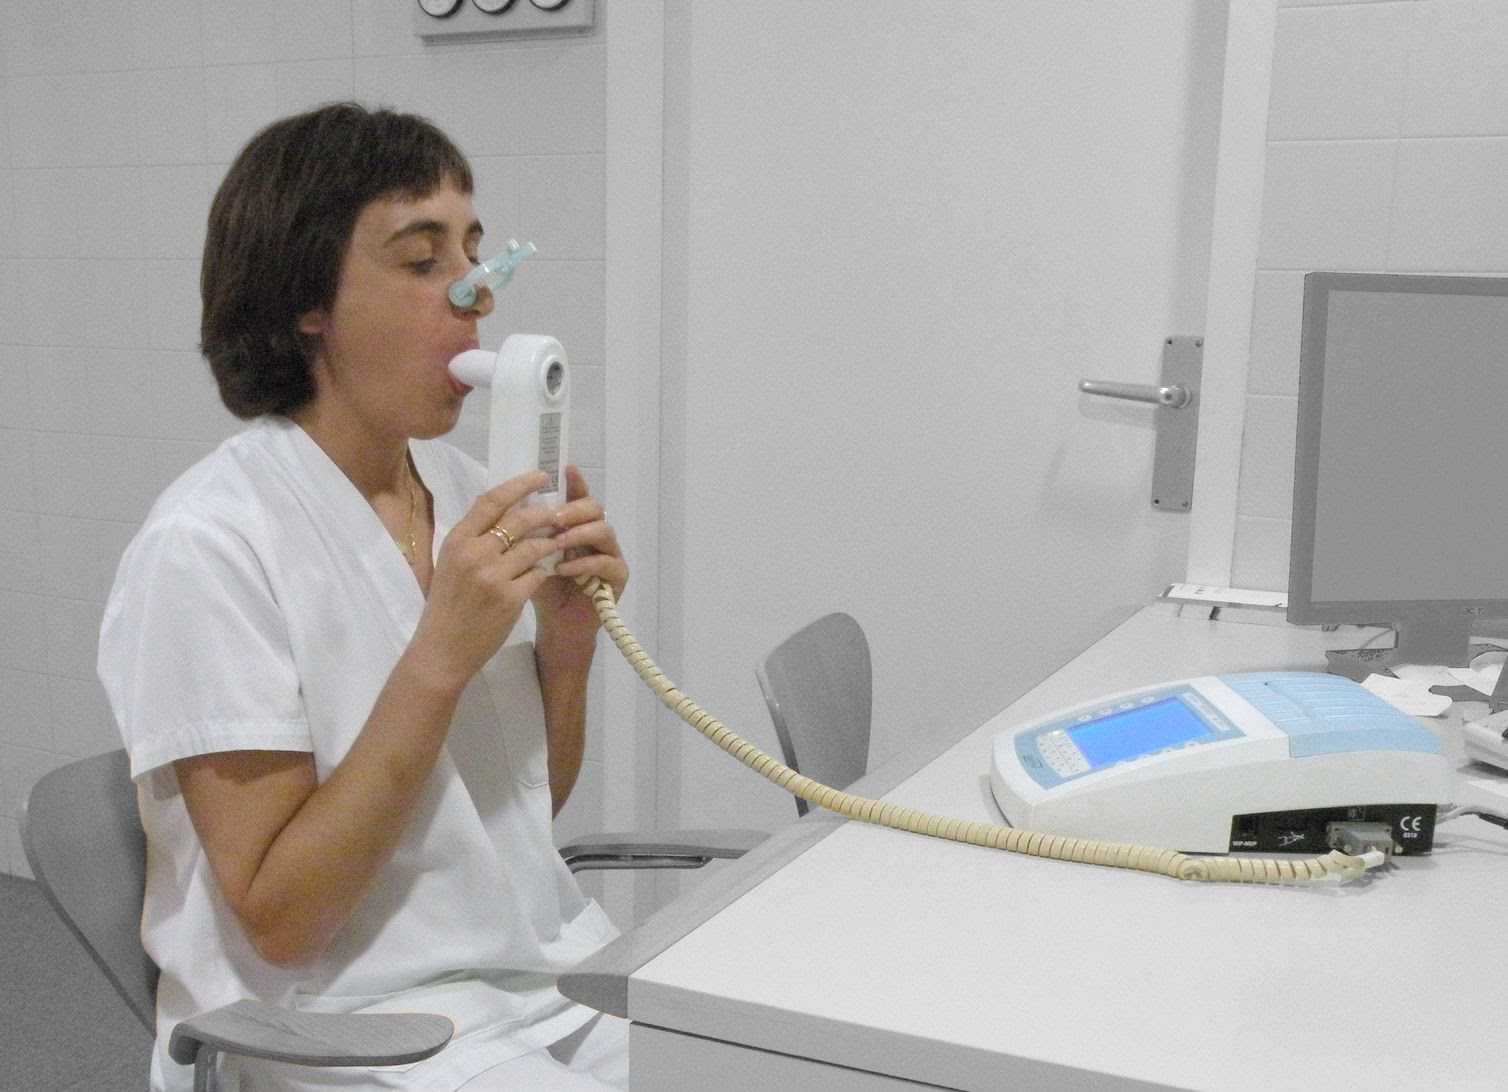 เลื่อนการตรวจสุขภาพตามปัจจัยเสี่ยงและการตรวจสมรรถภาพปอดด้วยวิธี Spirometry ออกไปชั่วคราวก่อนได้